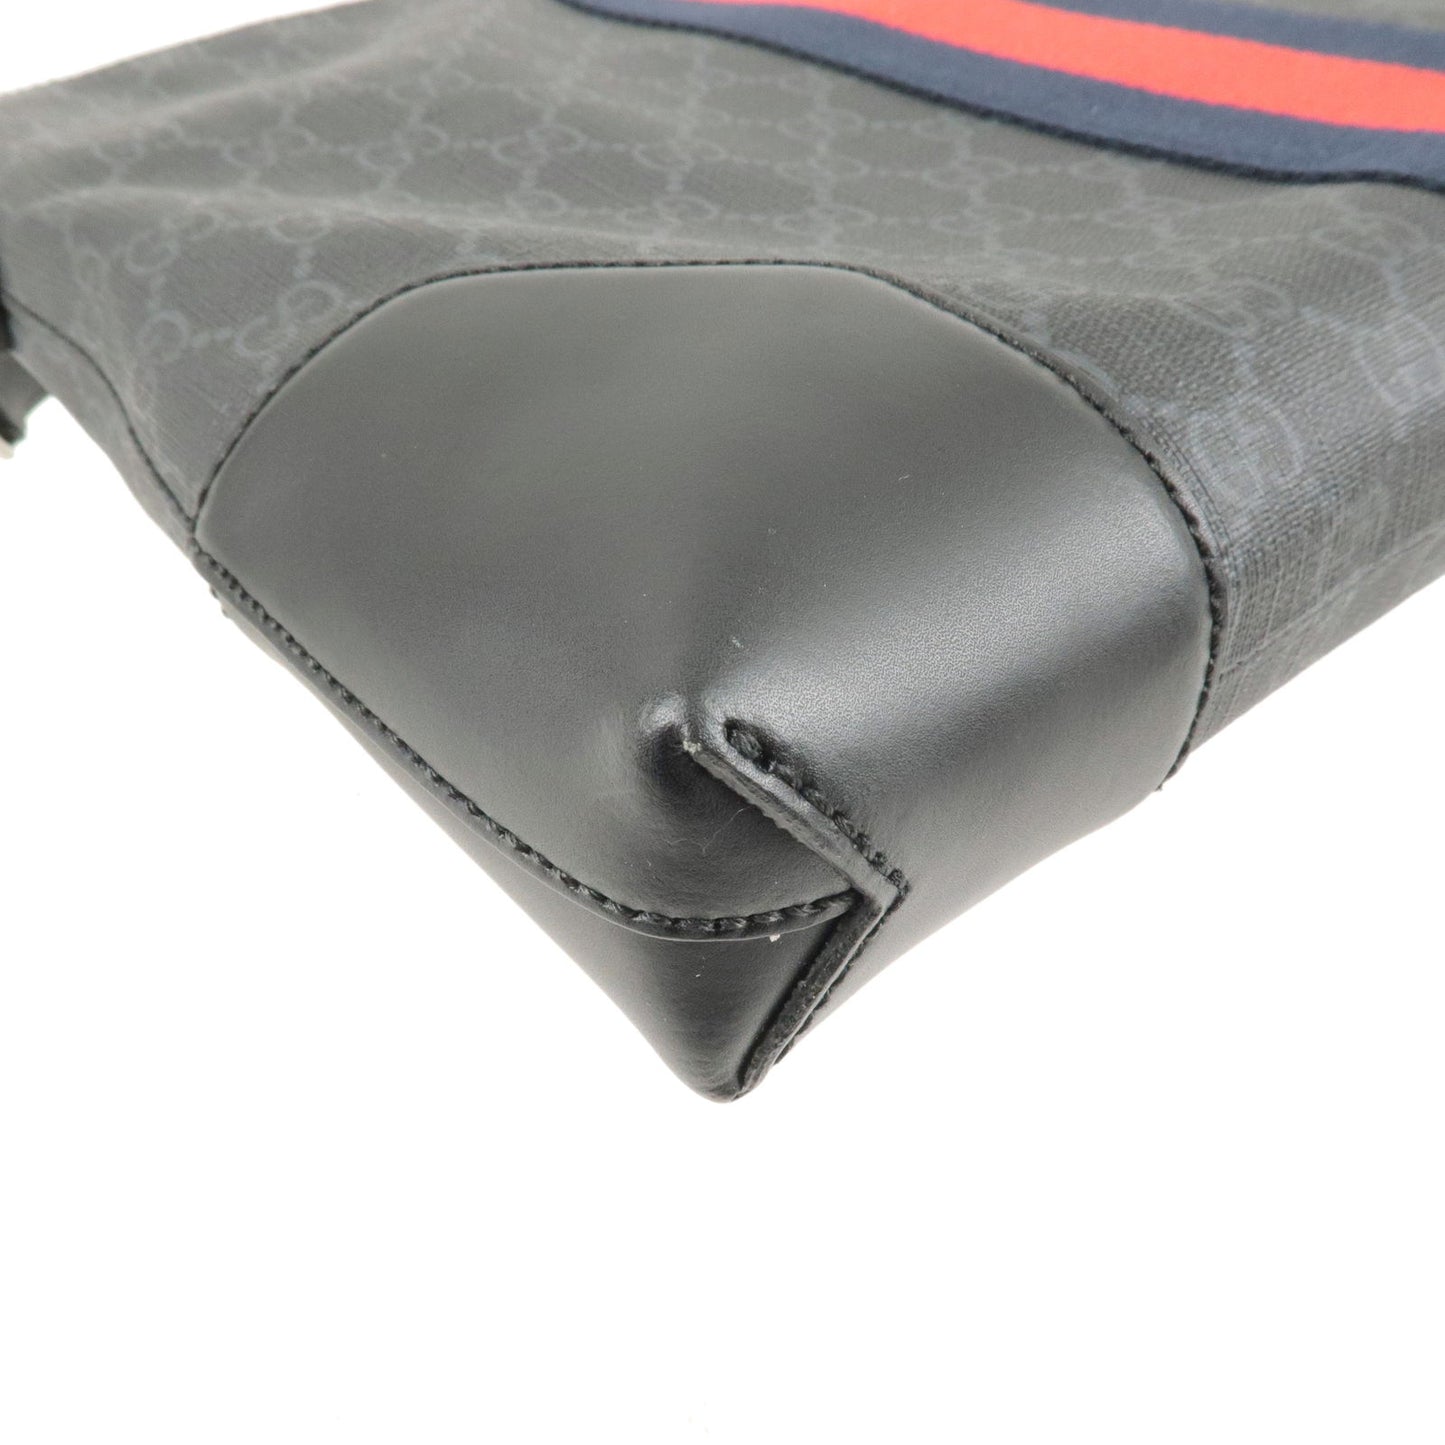 GUCCI GG Supreme Leather Shoulder Bag Gray Black 474139